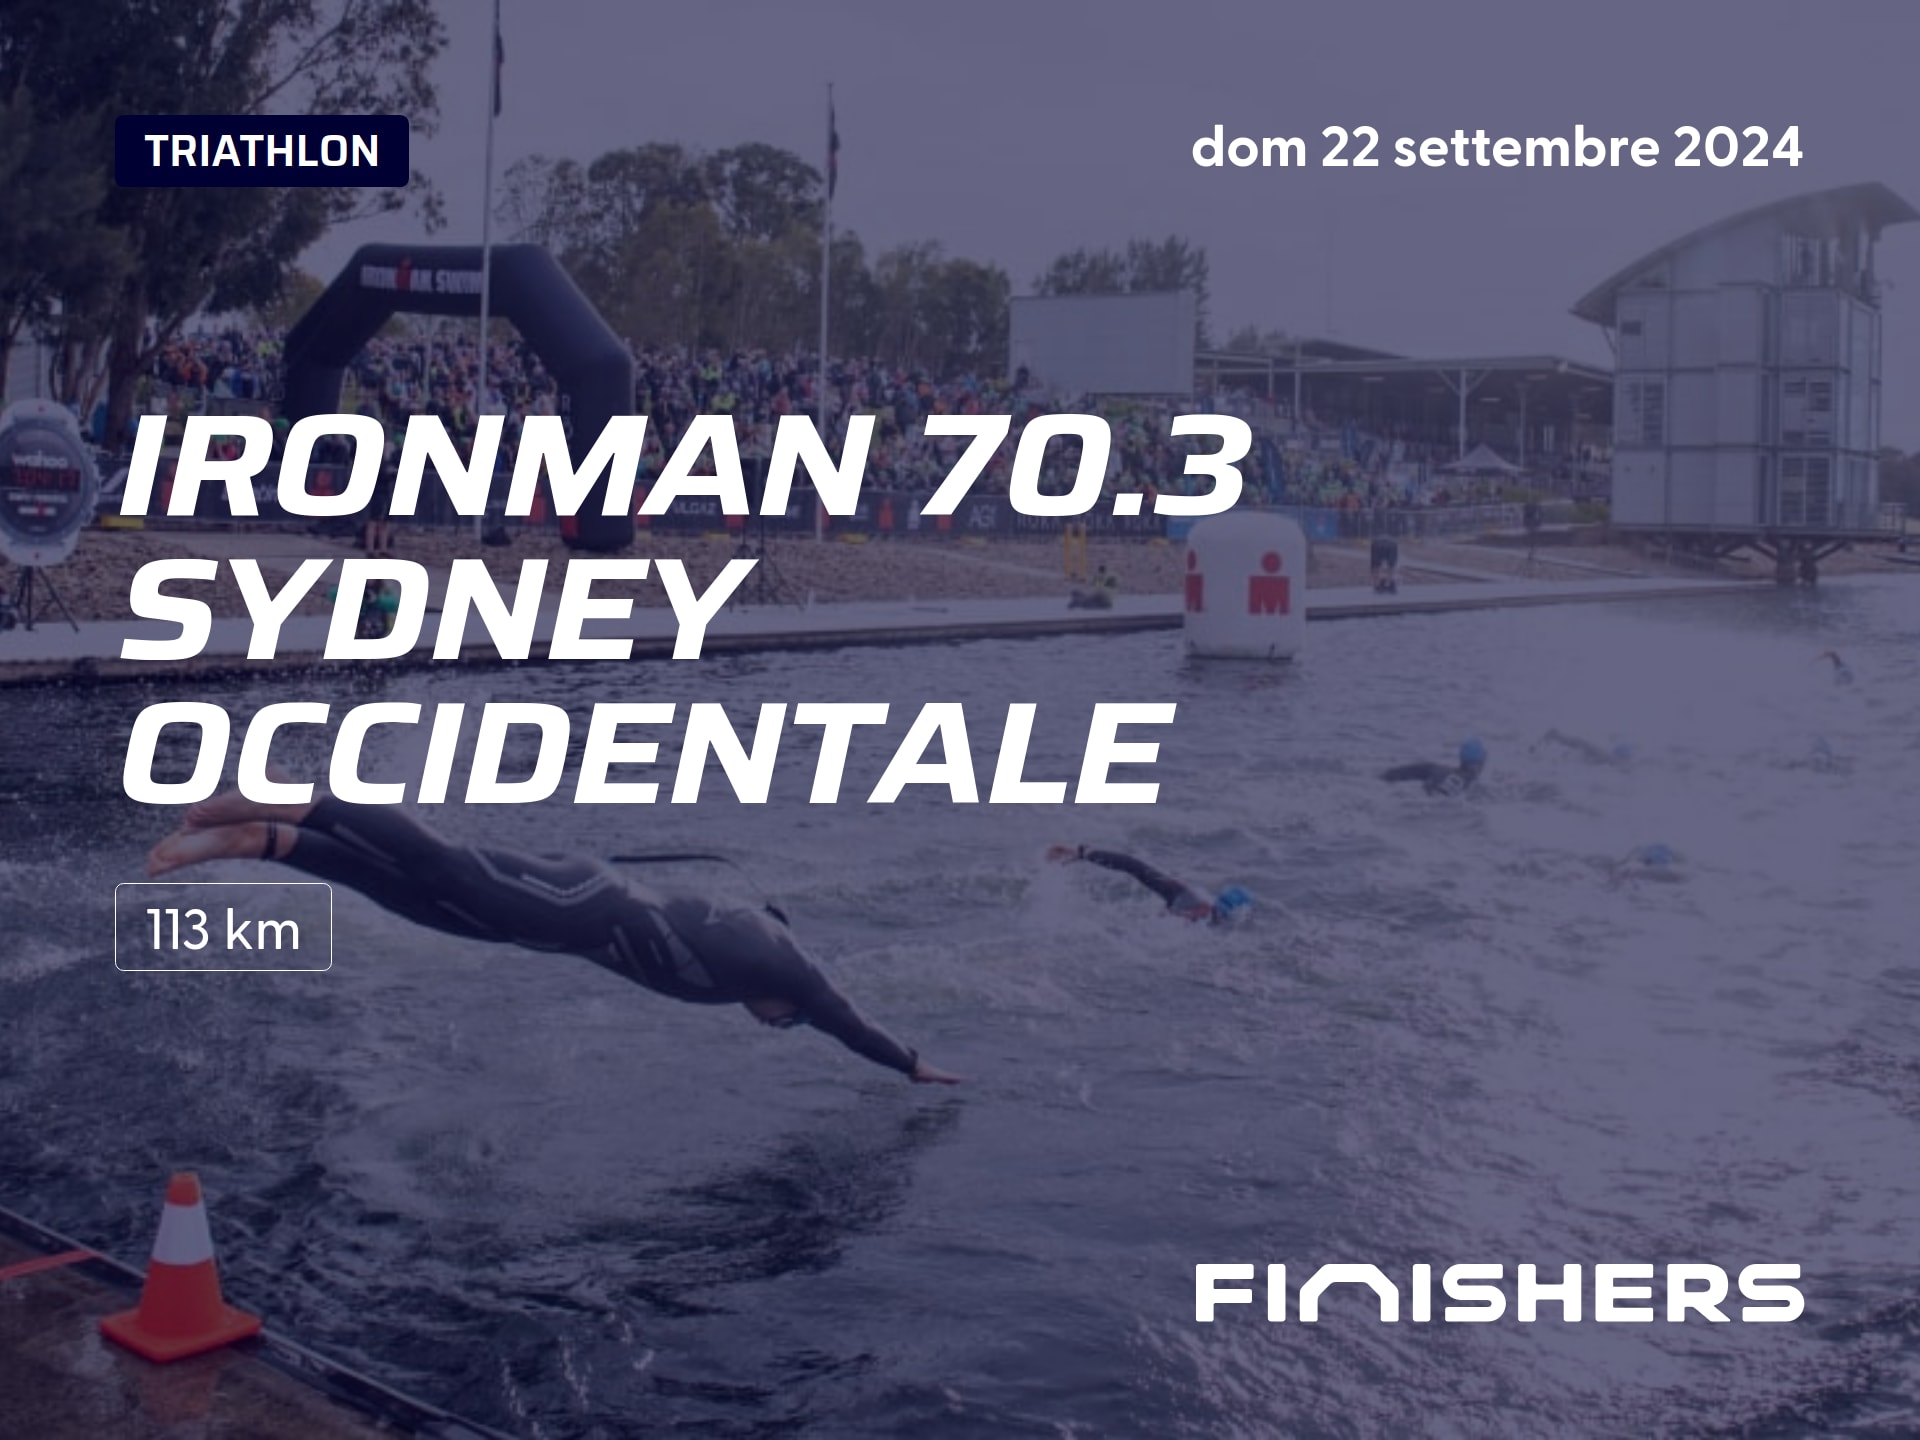 🏃 Ironman Svizzera - Thun 2024 - Tutte le informazioni sulle percorsi e  sulla registrazione